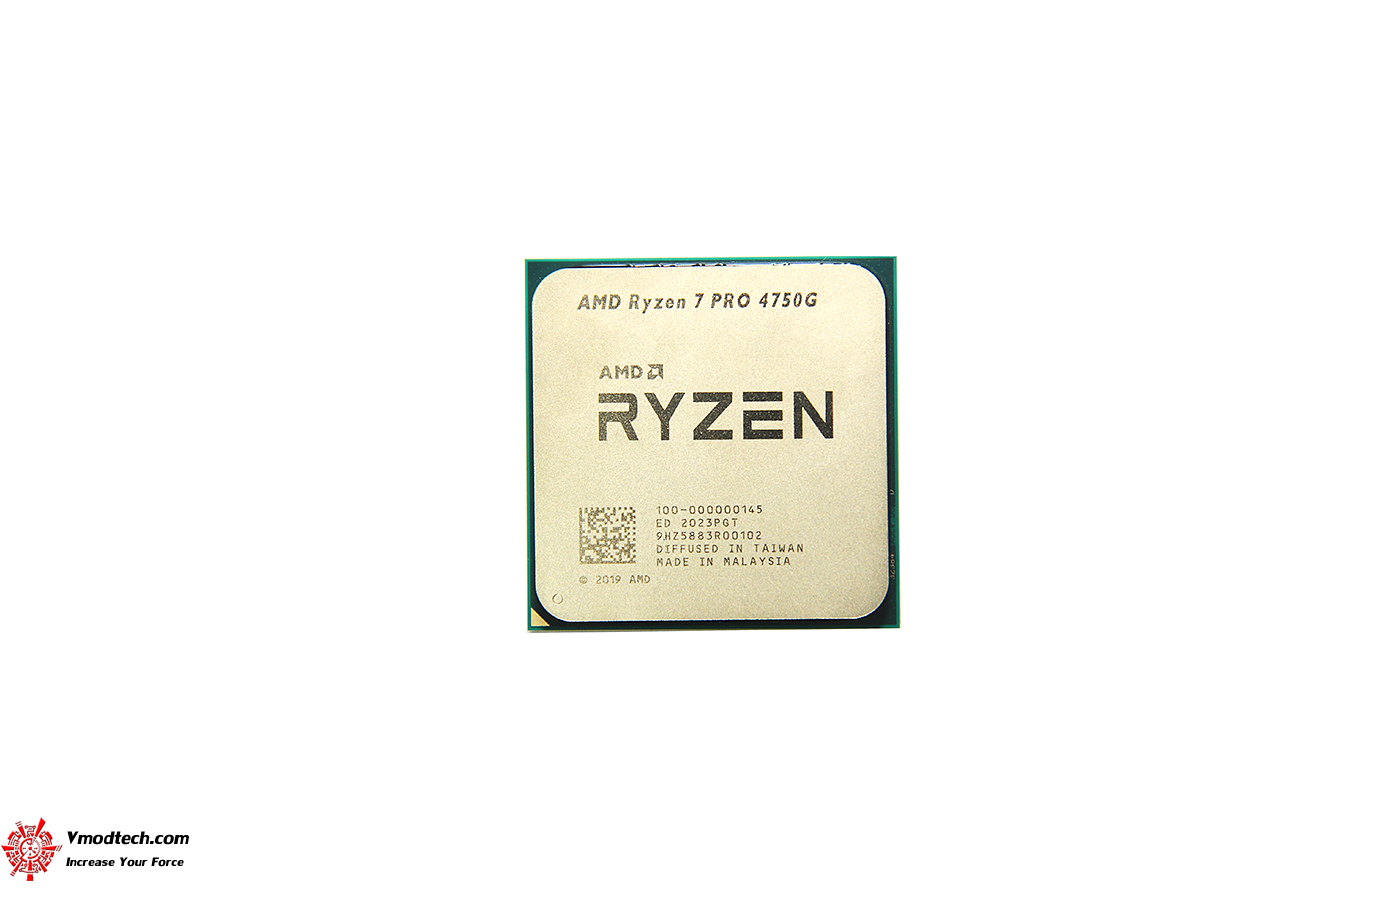 dsc 3636 AMD RYZEN 7 PRO 4750G PROCESSOR REVIEW